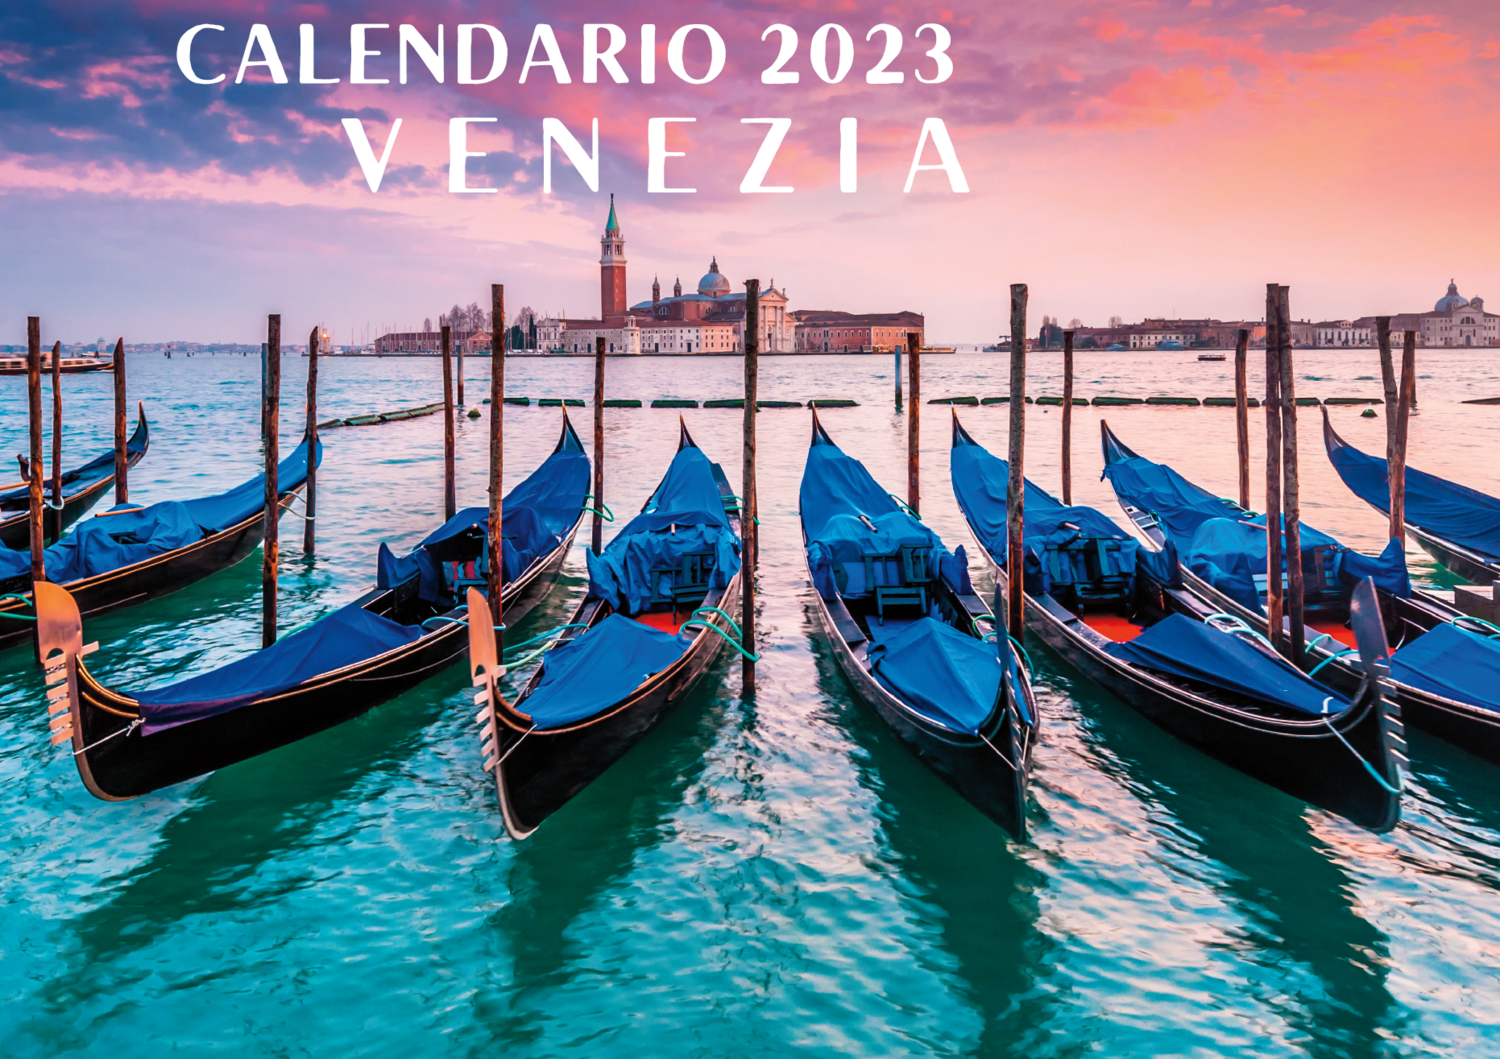 Calendar 2023 - Venice (PDF)